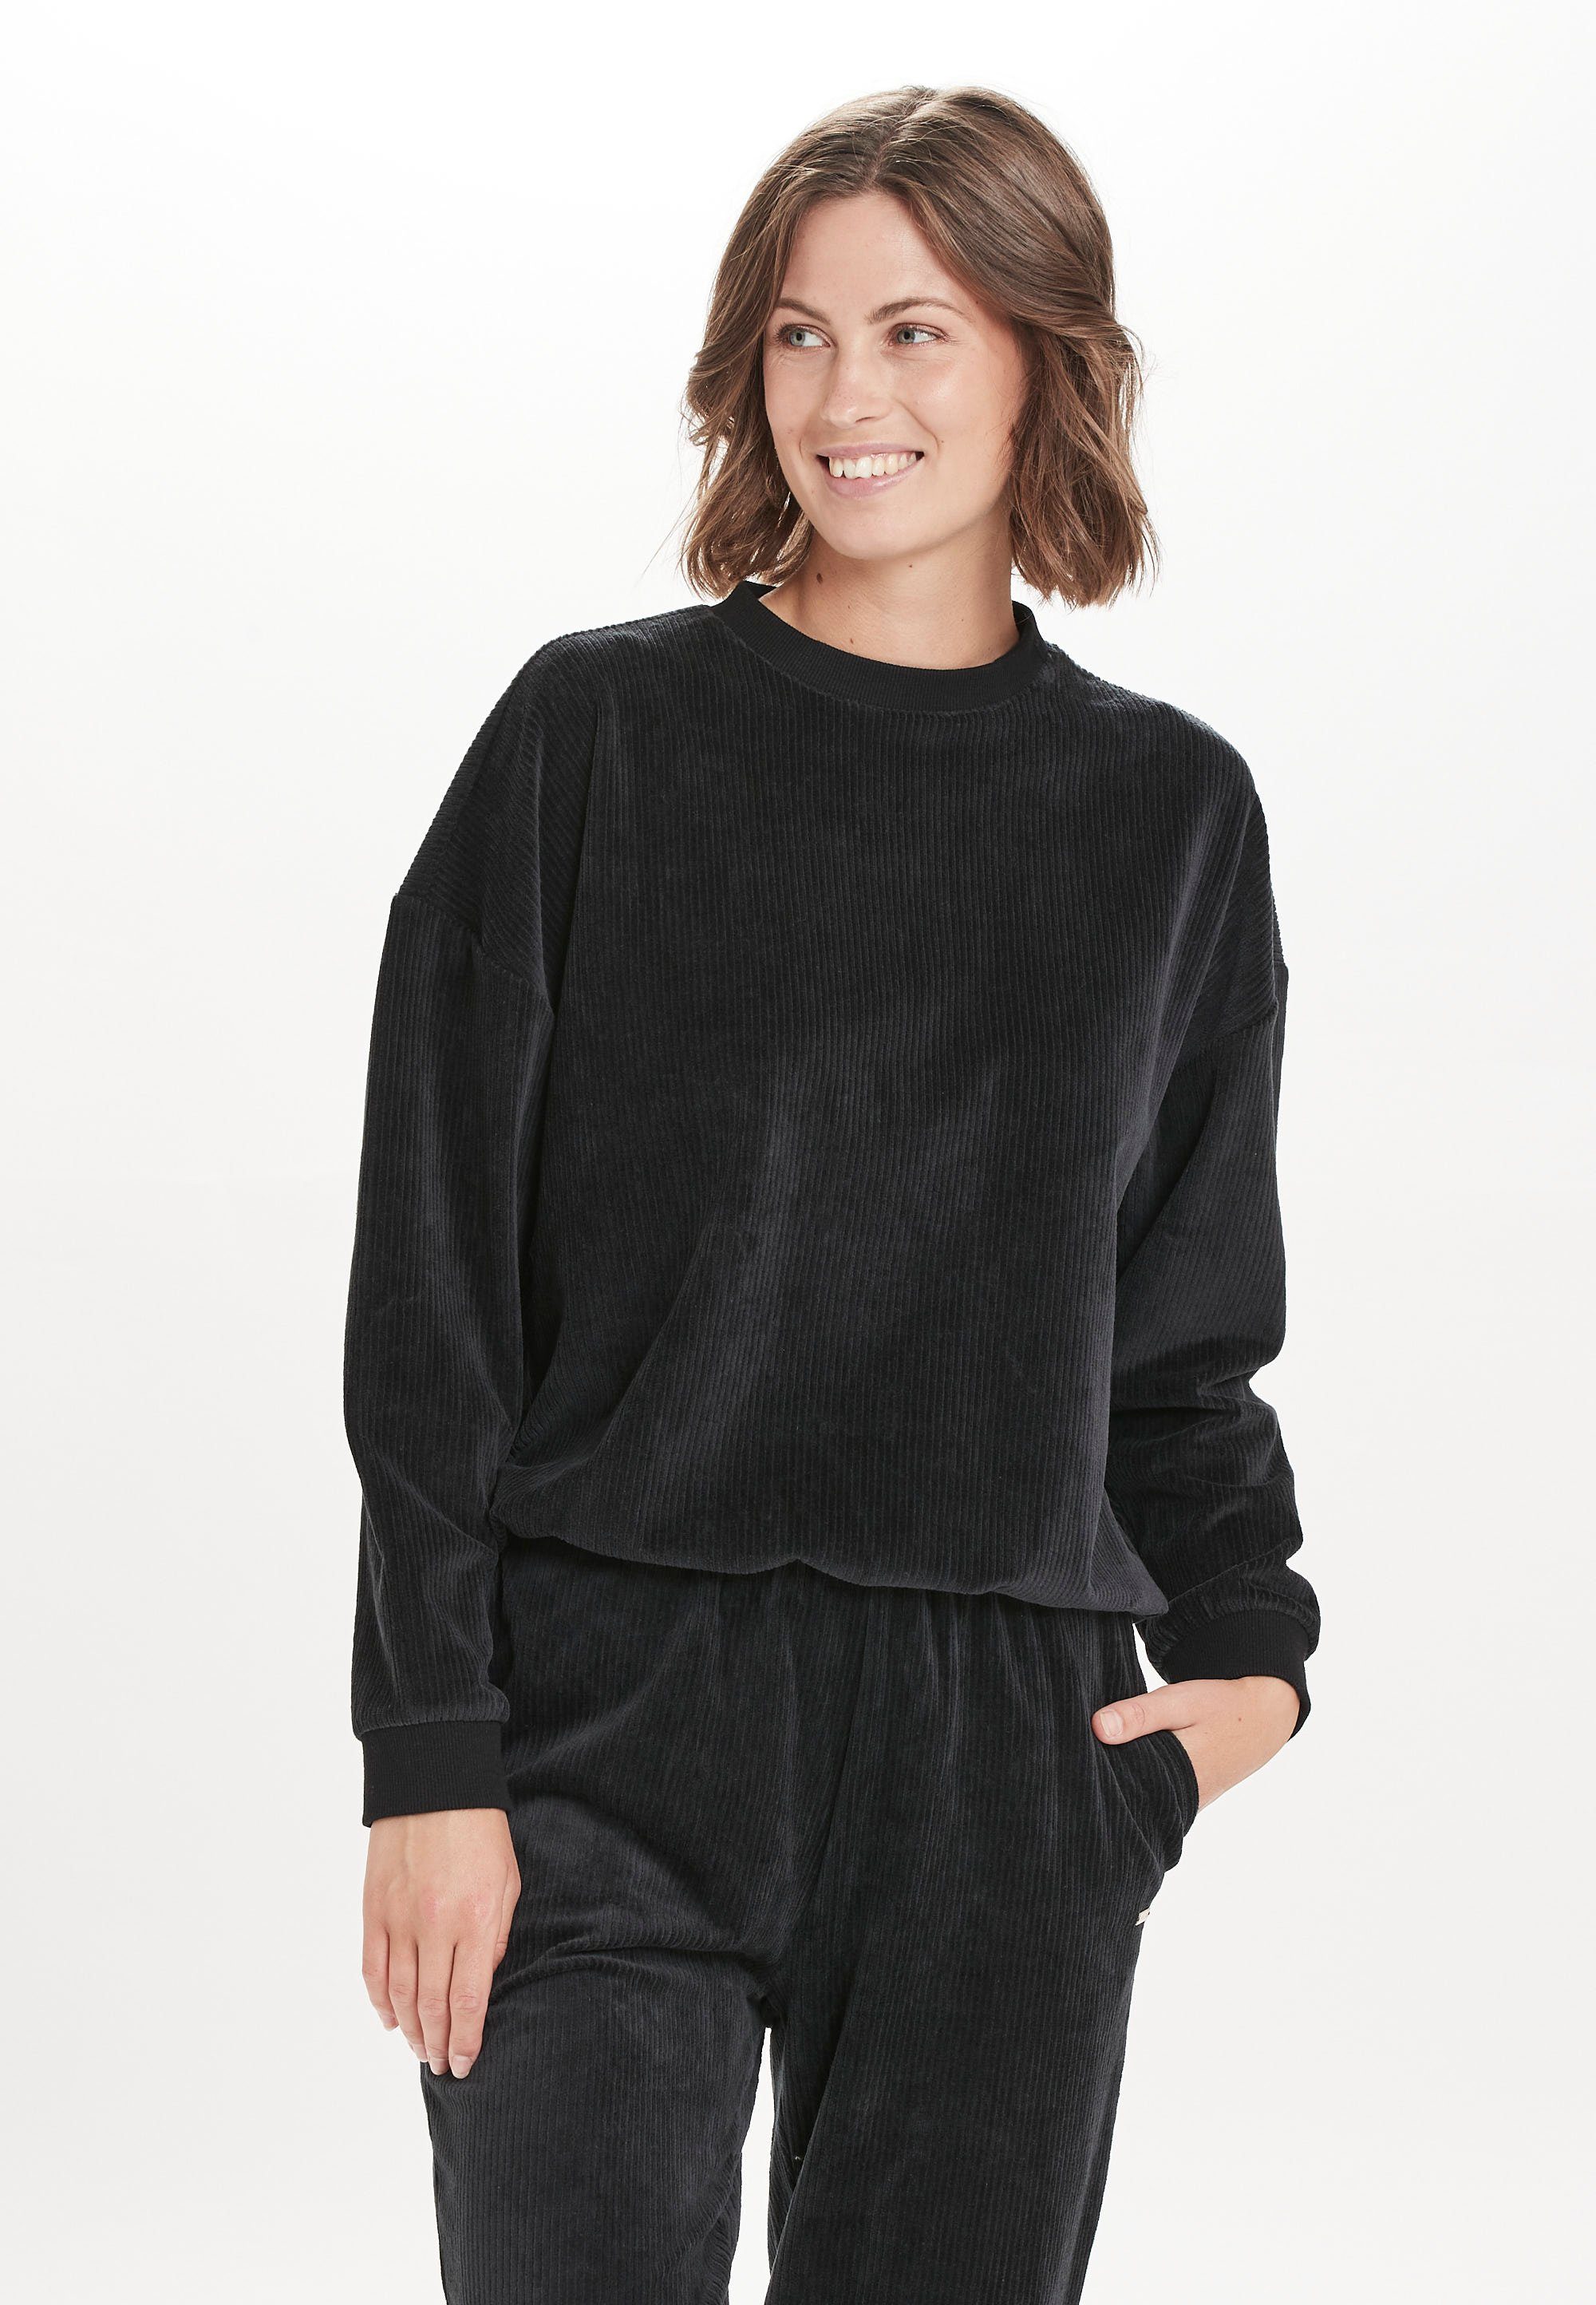 ATHLECIA Sweatshirt Marlie im trendigen Cord-Look schwarz